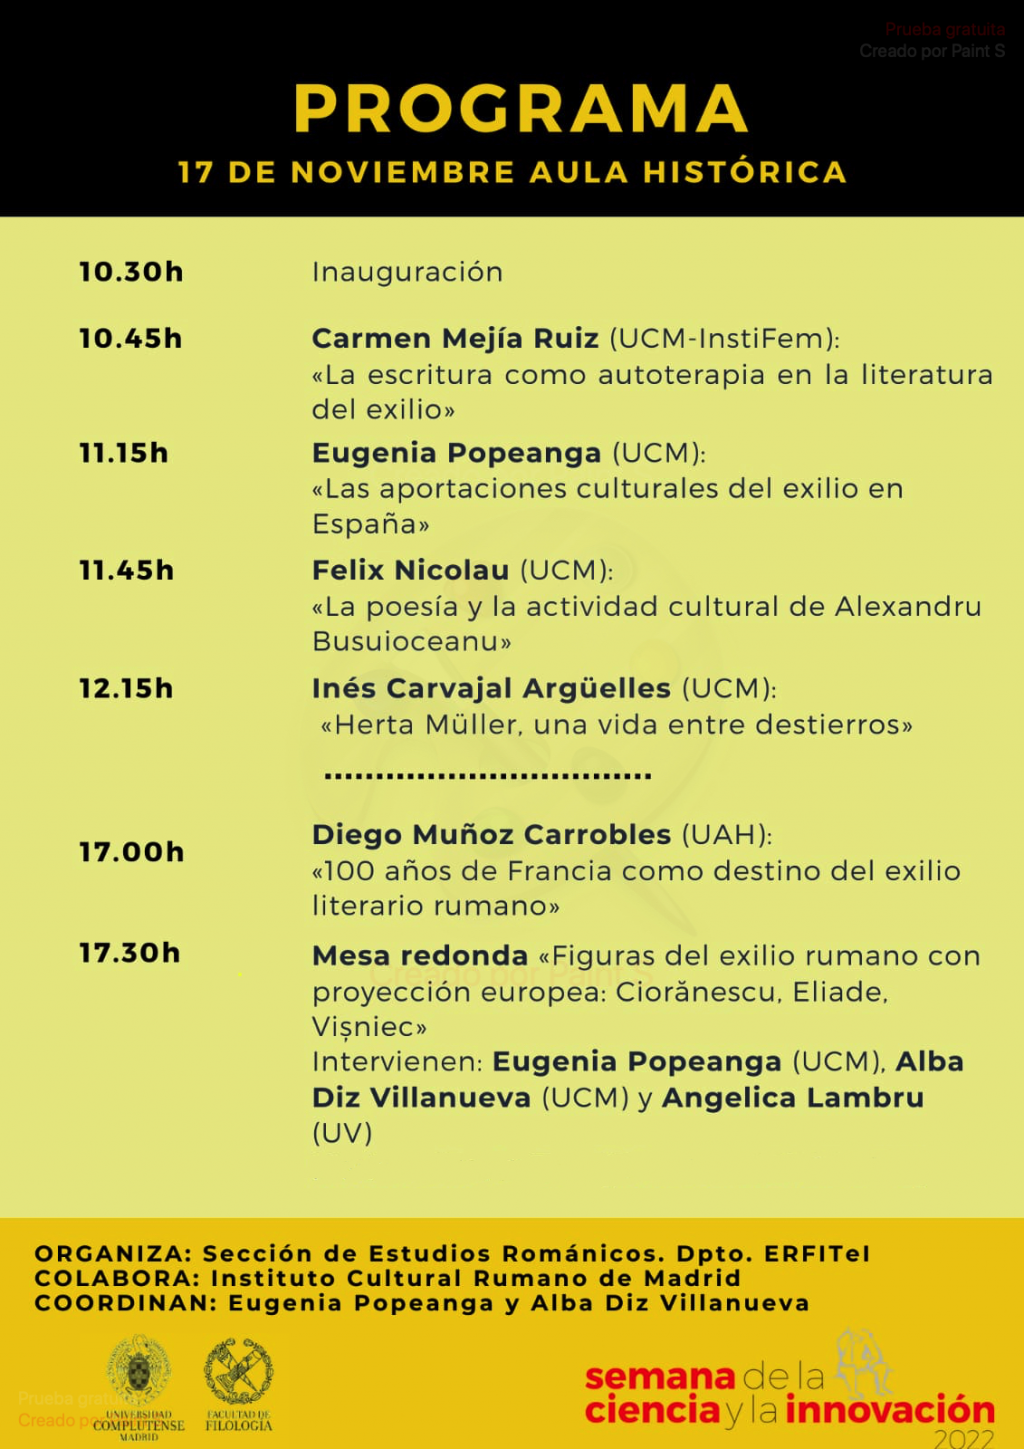 Exilul si migratia romanilor perceptii culturale in Europa - seminar la Madrid 17 noiembrie